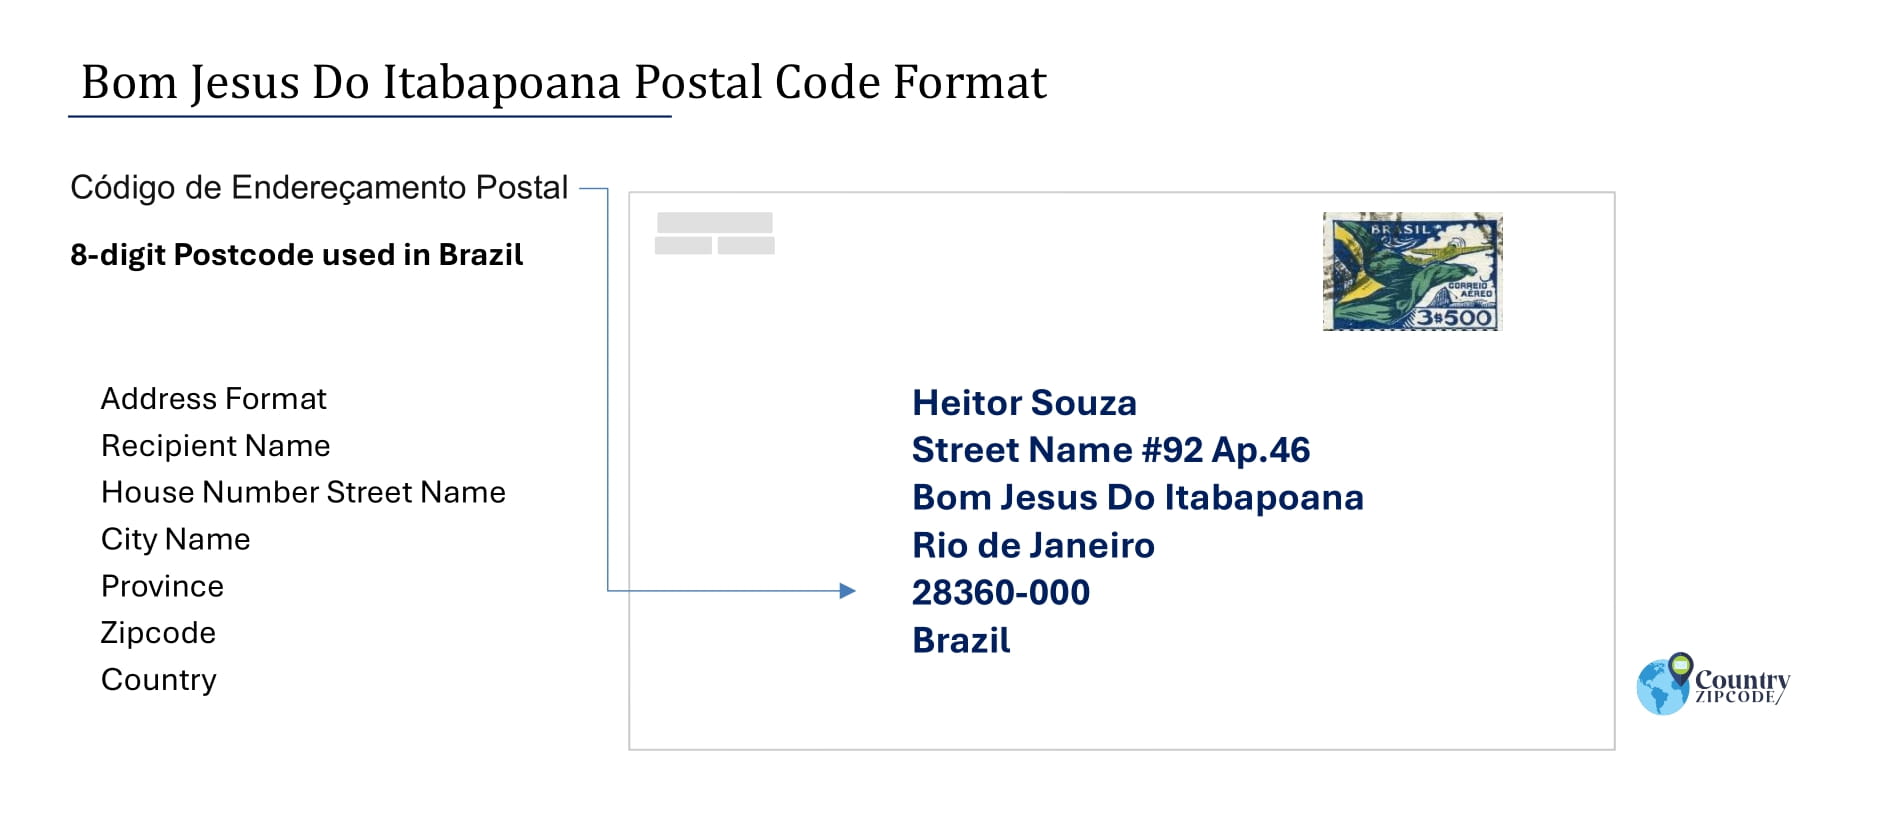 Example of Codigo de Enderecamento Postal and Address format of Bom Jesus Do Itabapoana Brazil